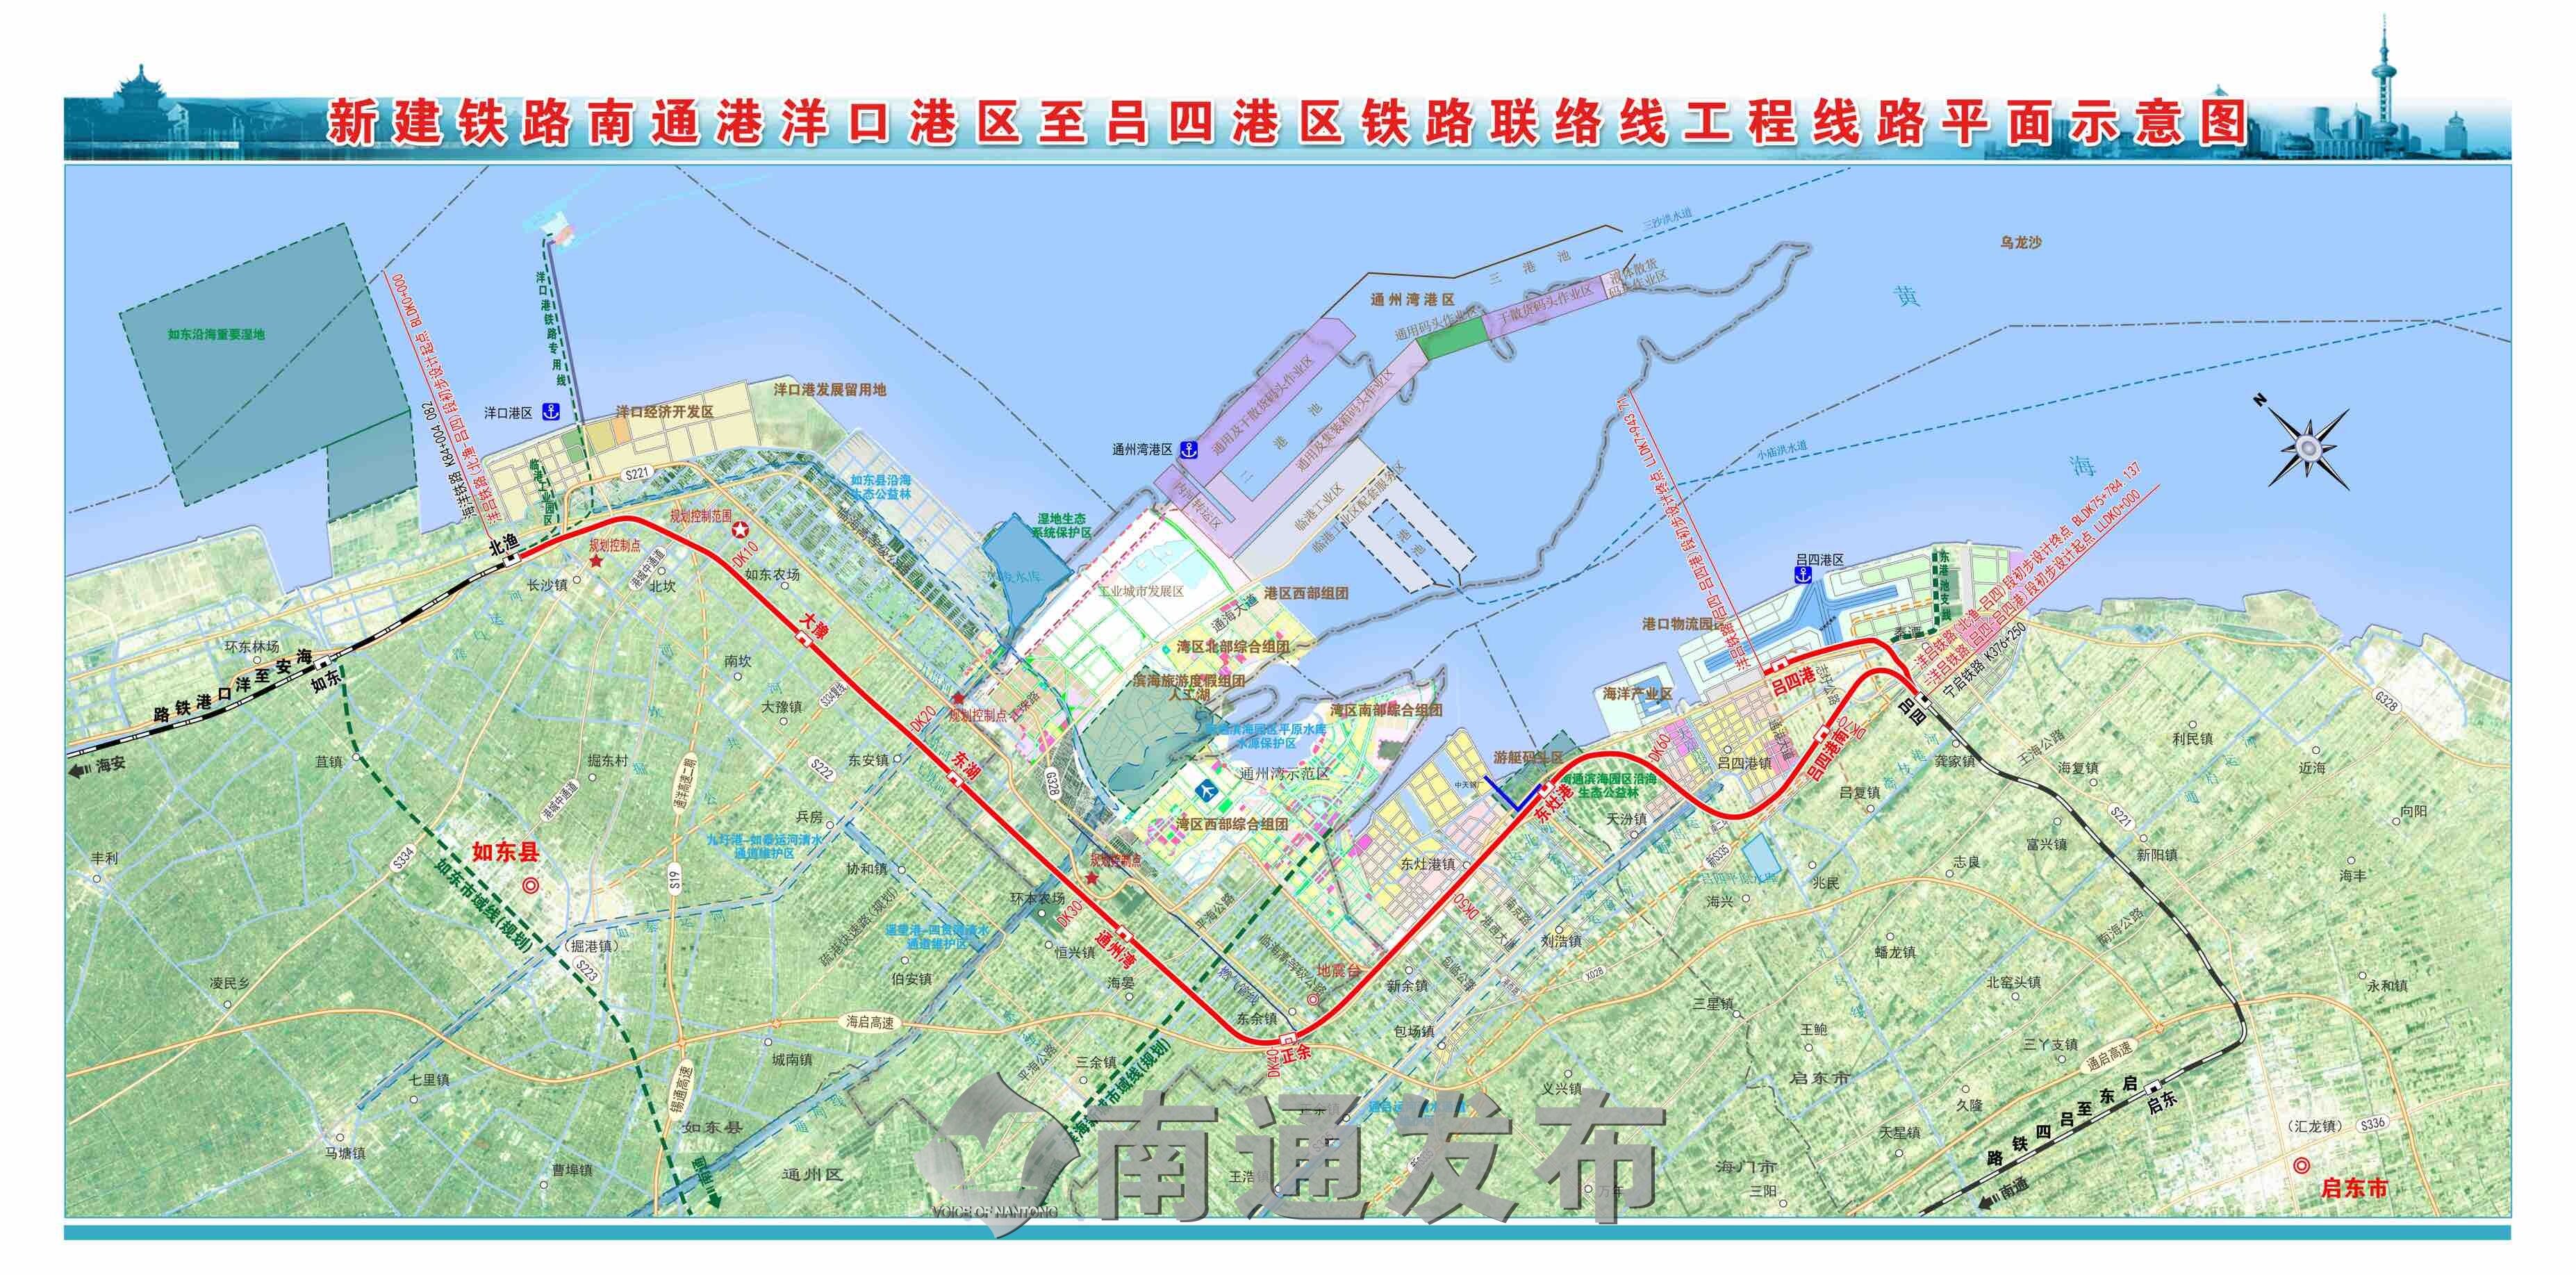 推进铁路专用线建设的指导意见》明确的专用线;对打造通州湾长江集